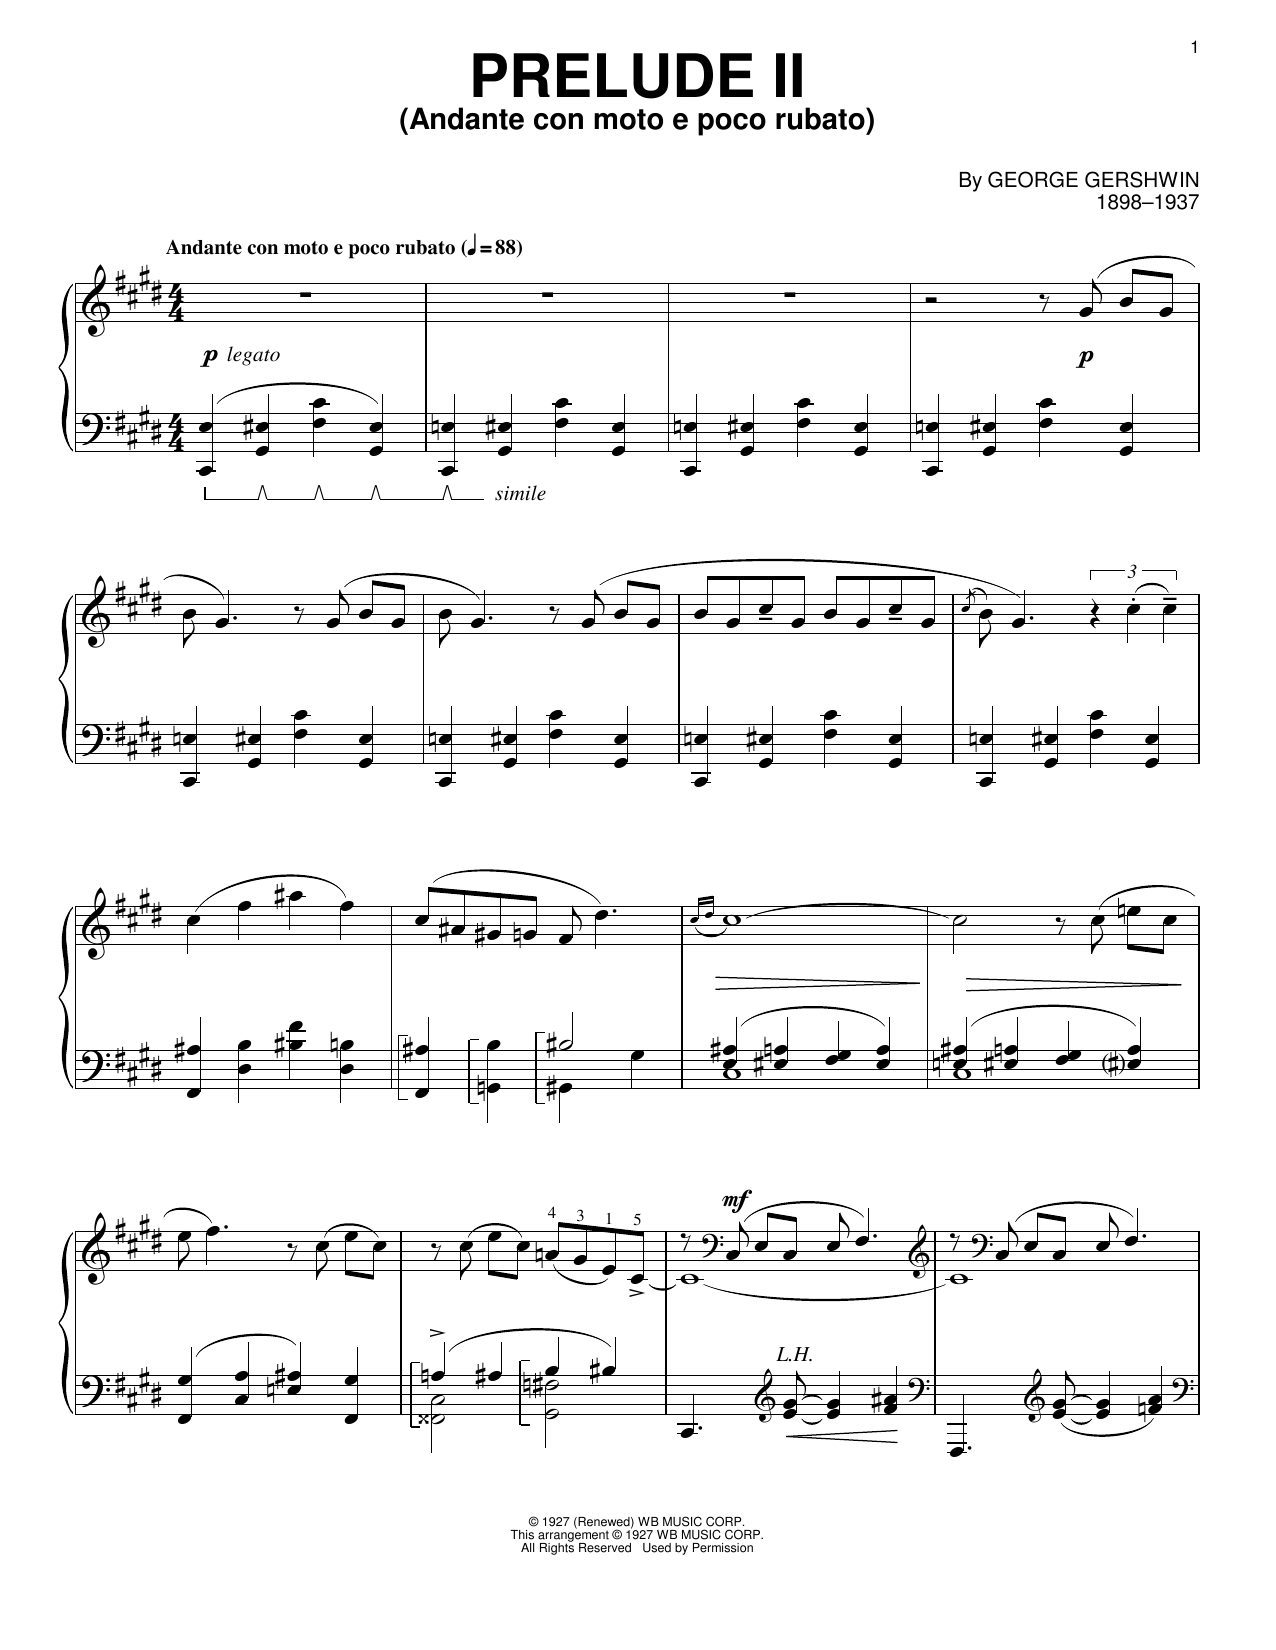 Download George Gershwin Prelude II (Andante Con Moto E Poco Rubato) Sheet Music and learn how to play Cello and Piano PDF digital score in minutes